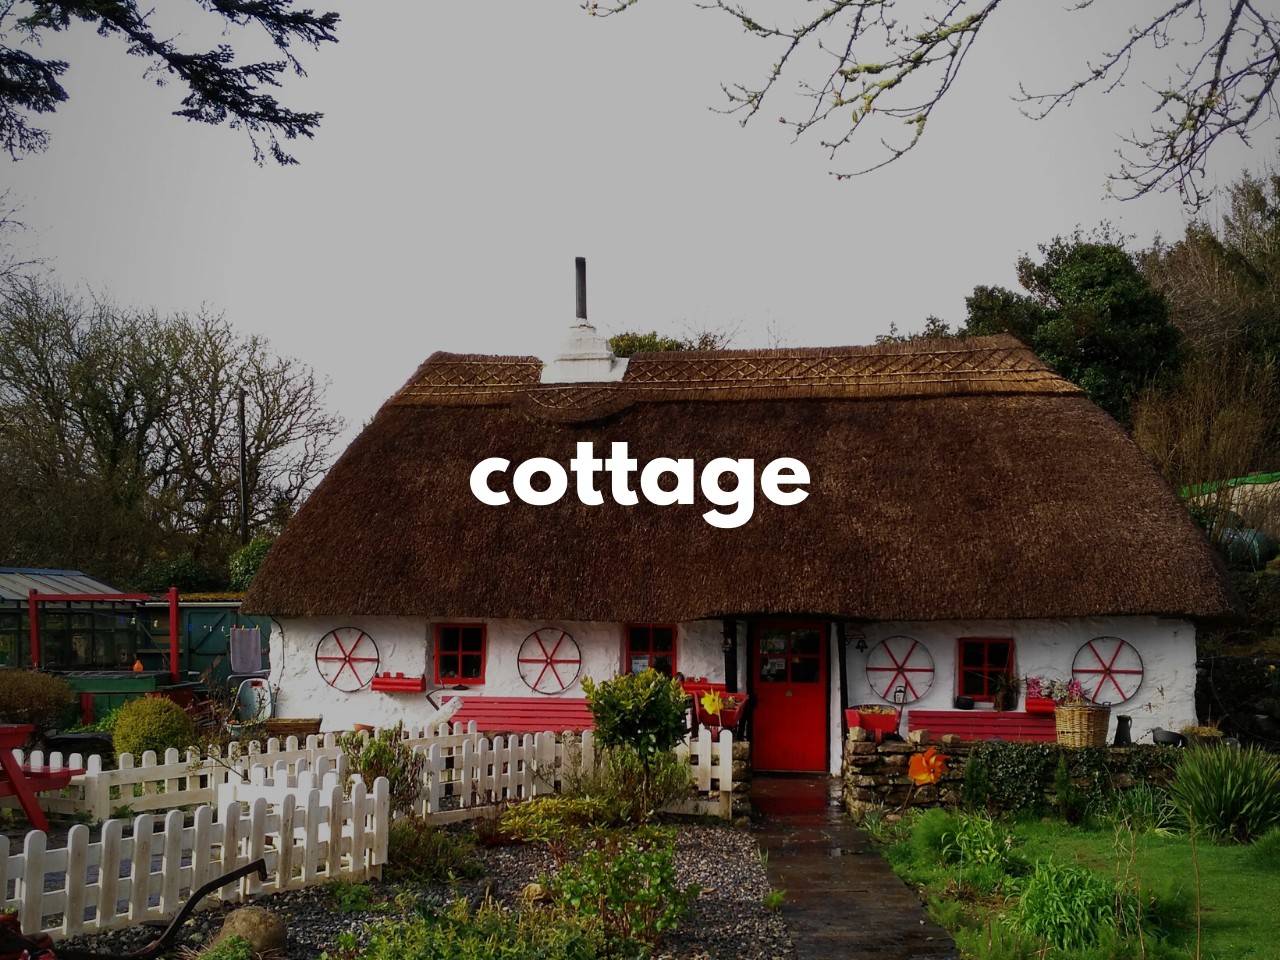 cottage : コテージ・小さい別荘